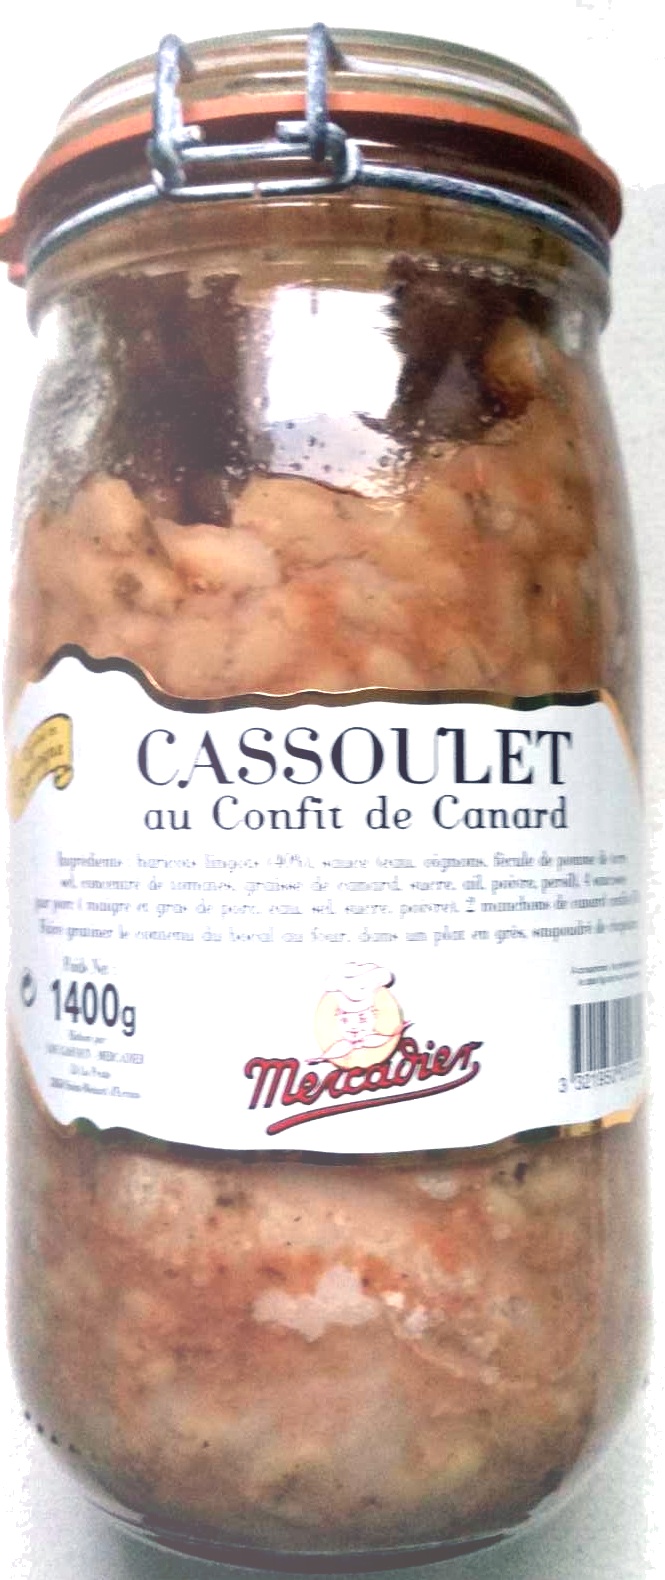 Cassoulet au confit de canard - Produit - fr